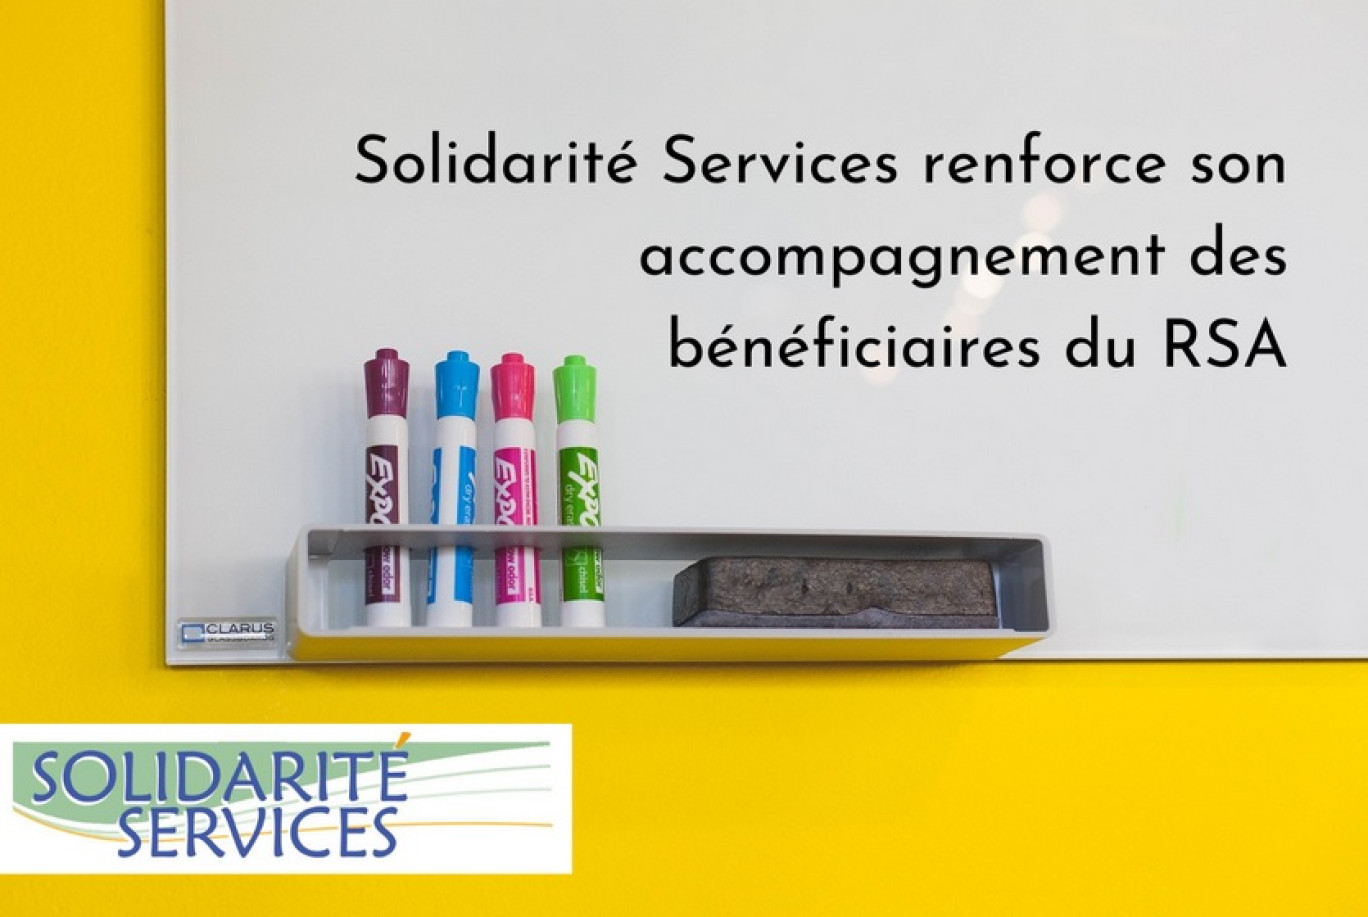 (c) Solidarité Services.